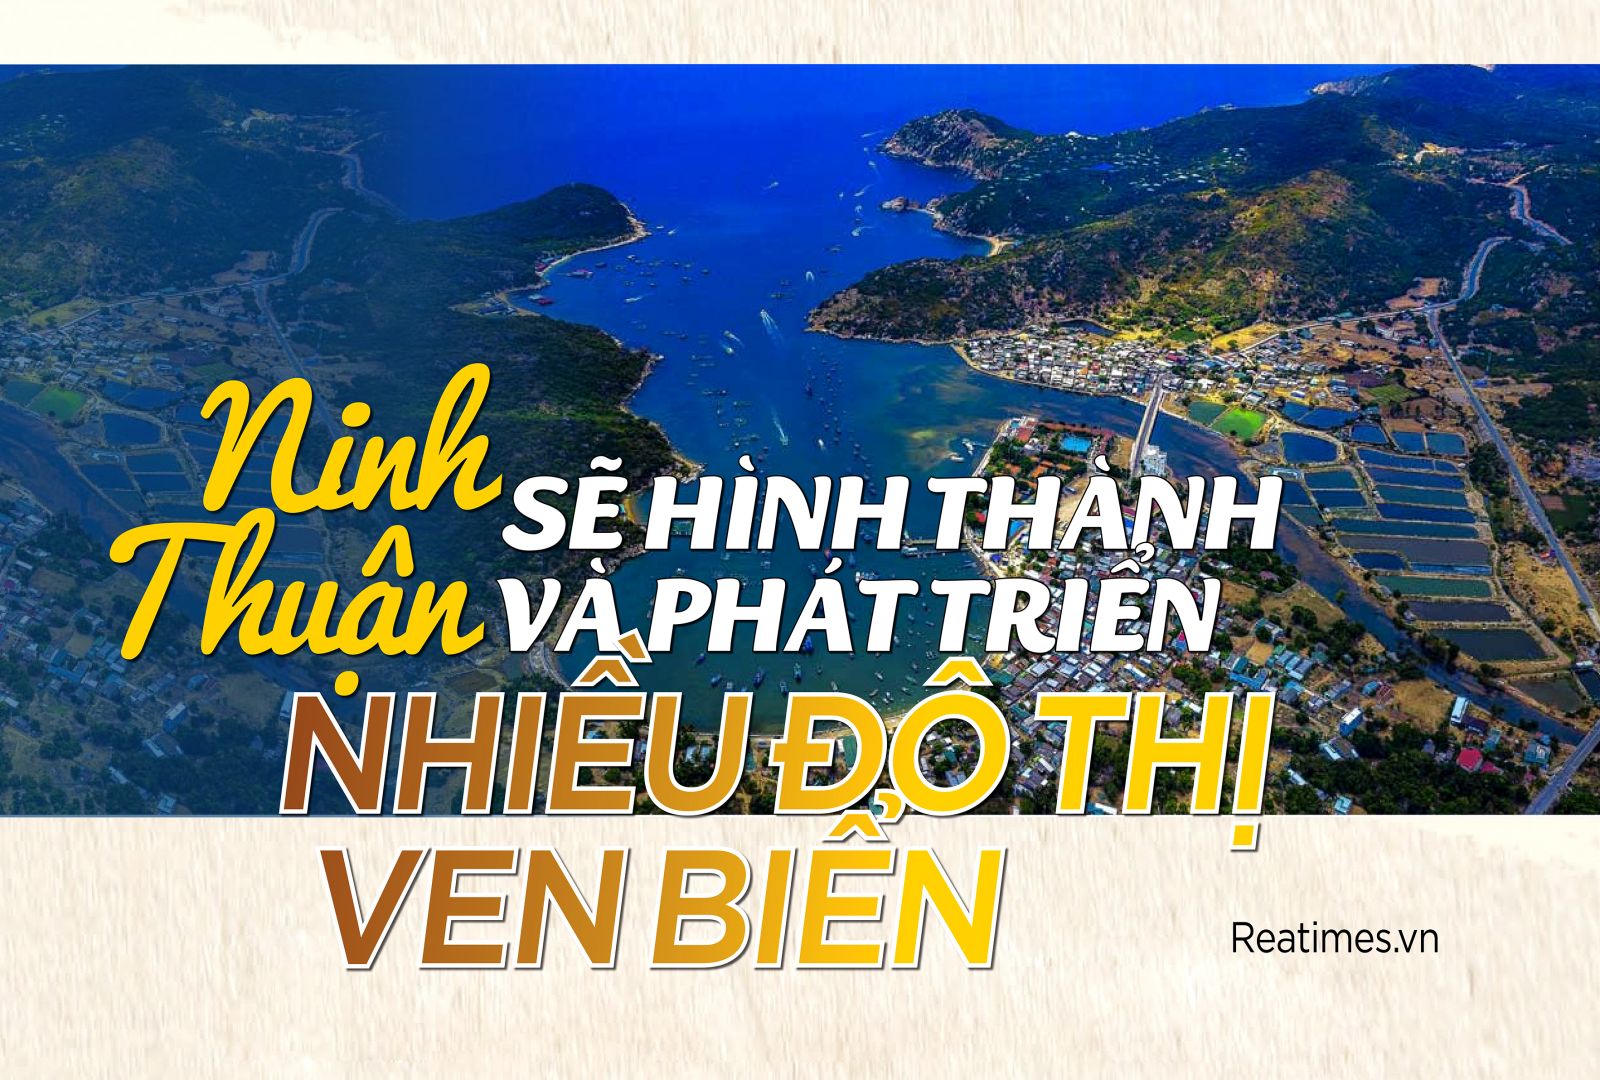 Ninh Thuận sẽ hình thành và phát triển nhiều đô thị ven biển